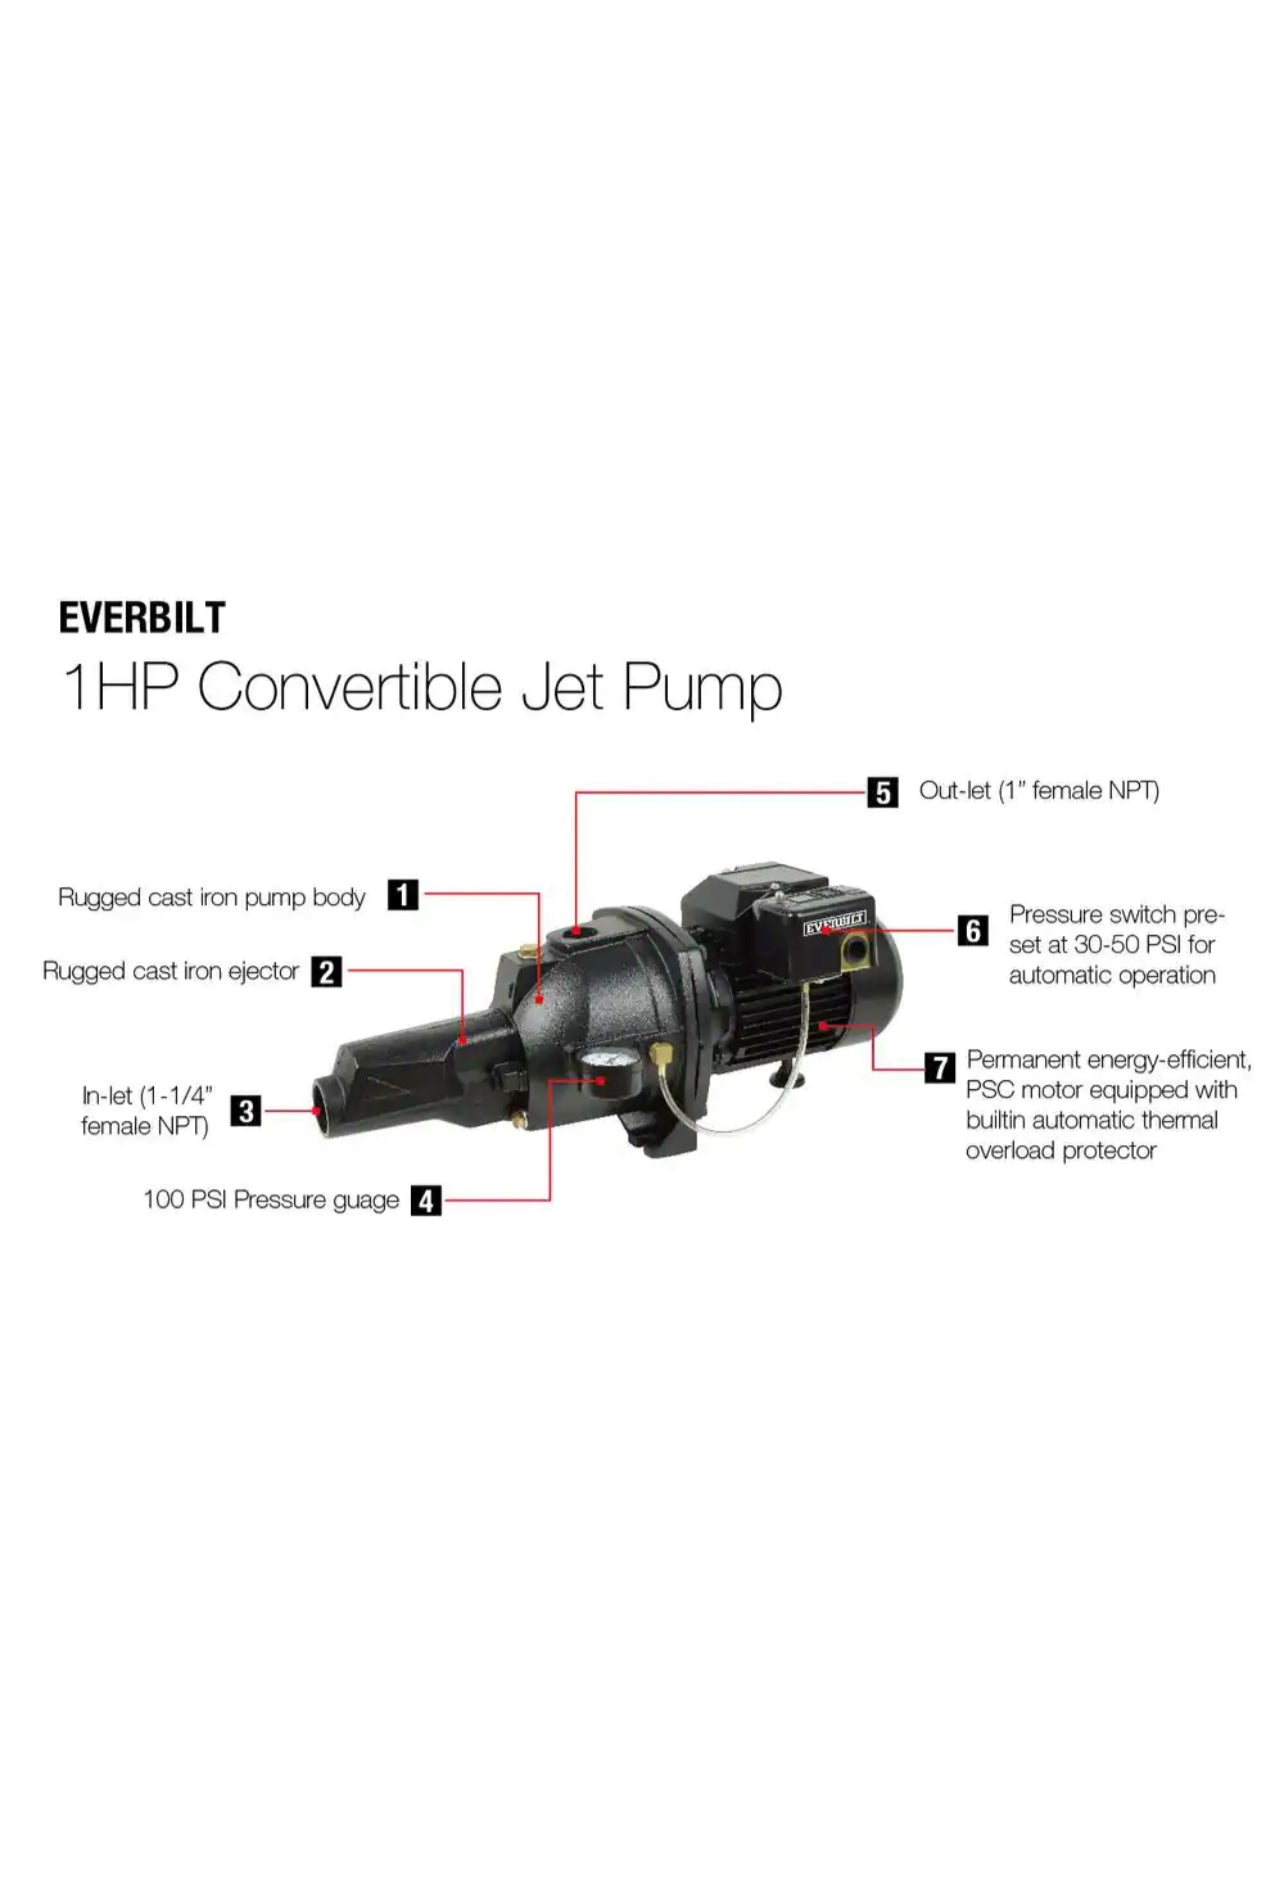 Everbilt 1 HP Convertible Jet Pump Damaged Box